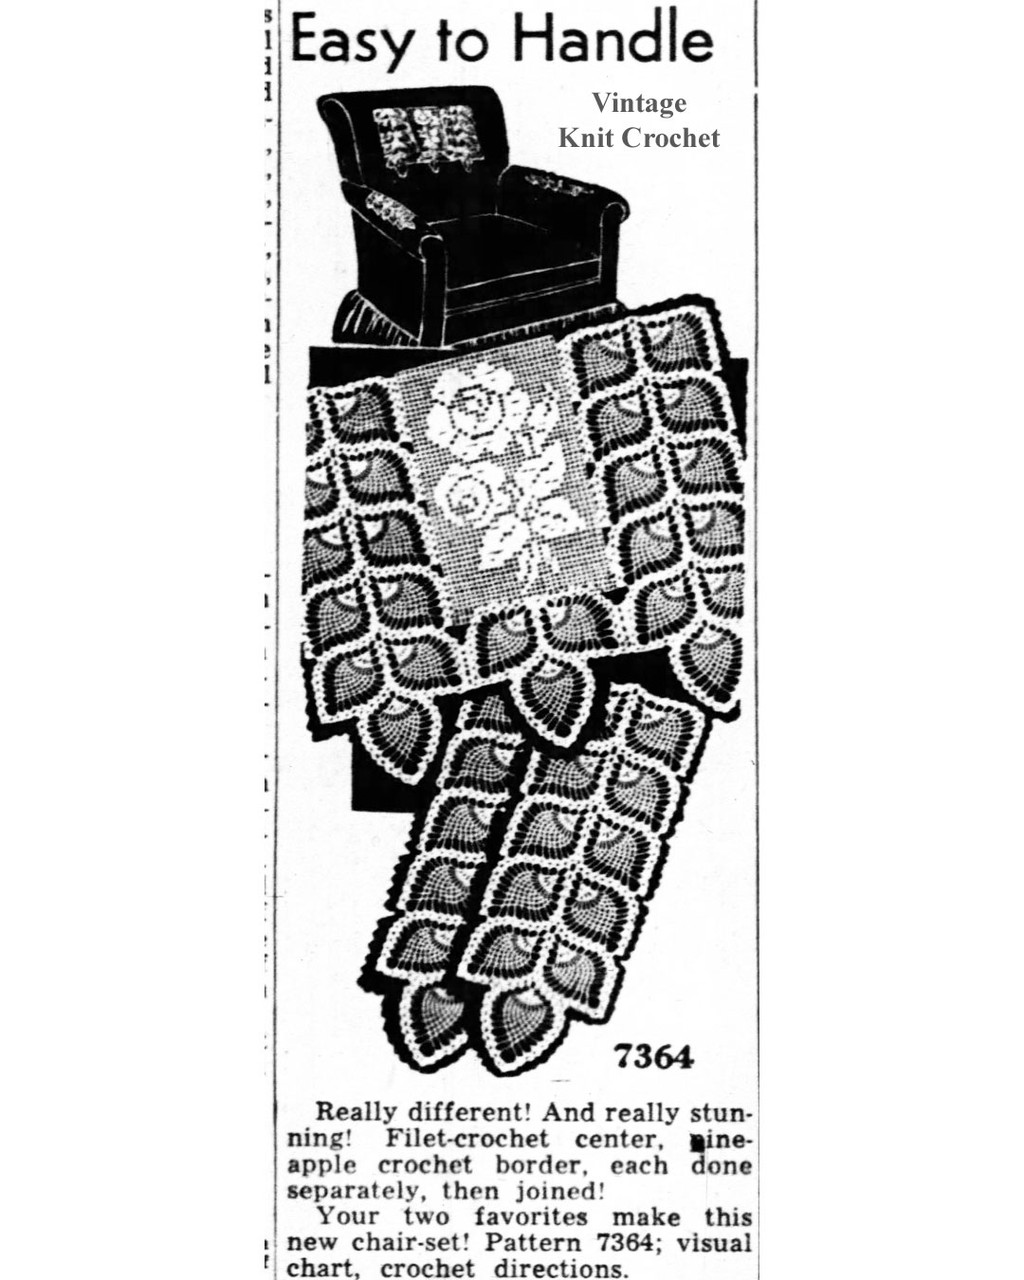 Mail Order Design 7364 Crochet Chair Set Newspaper Advertisement 